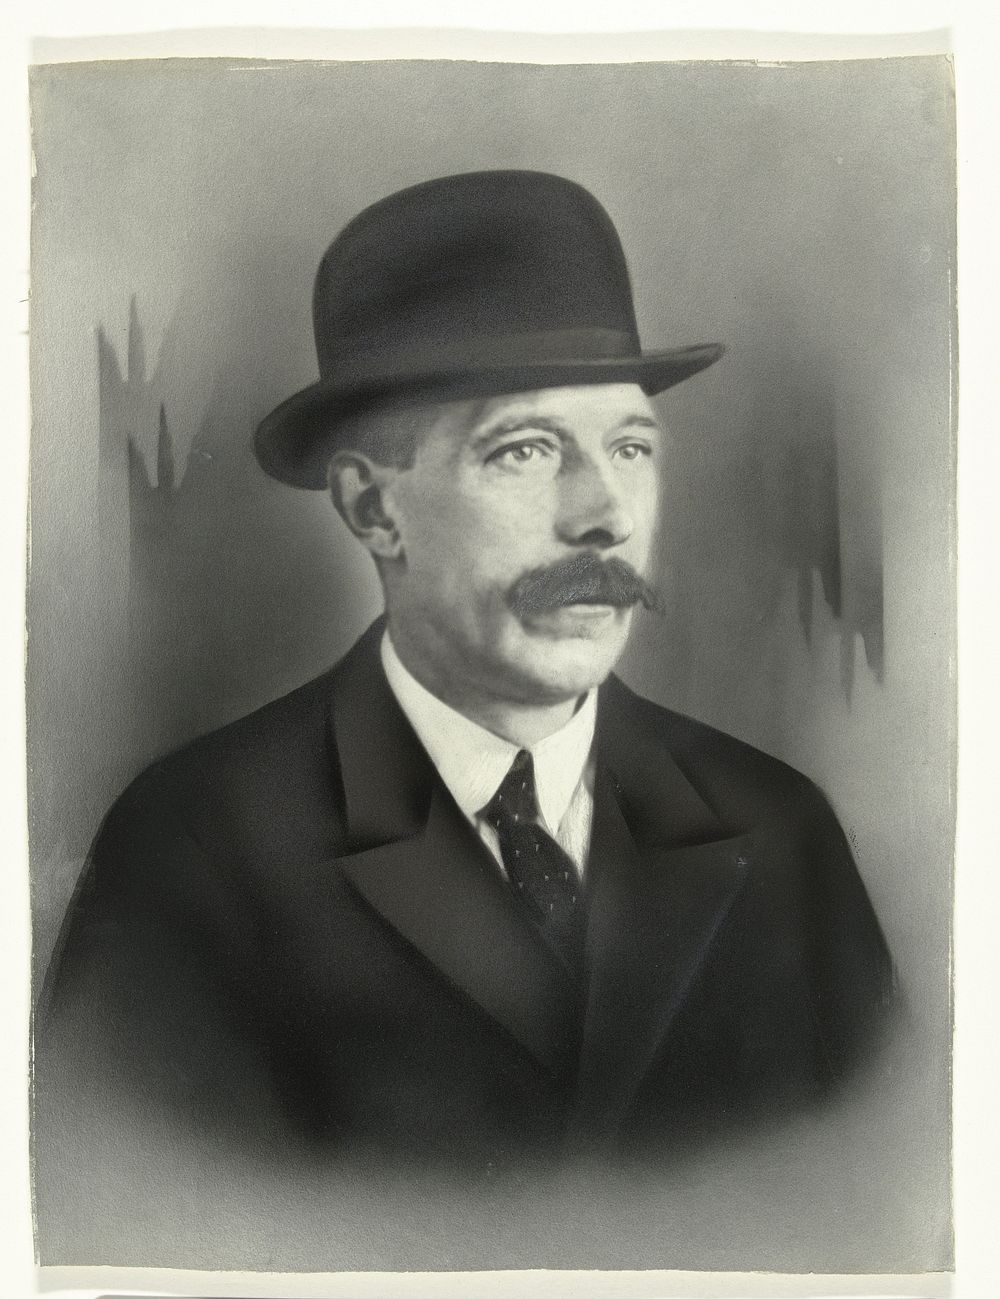 Ingekleurd portret van een man met snor en bolhoed (c. 1920 - c. 1940) by Ceko